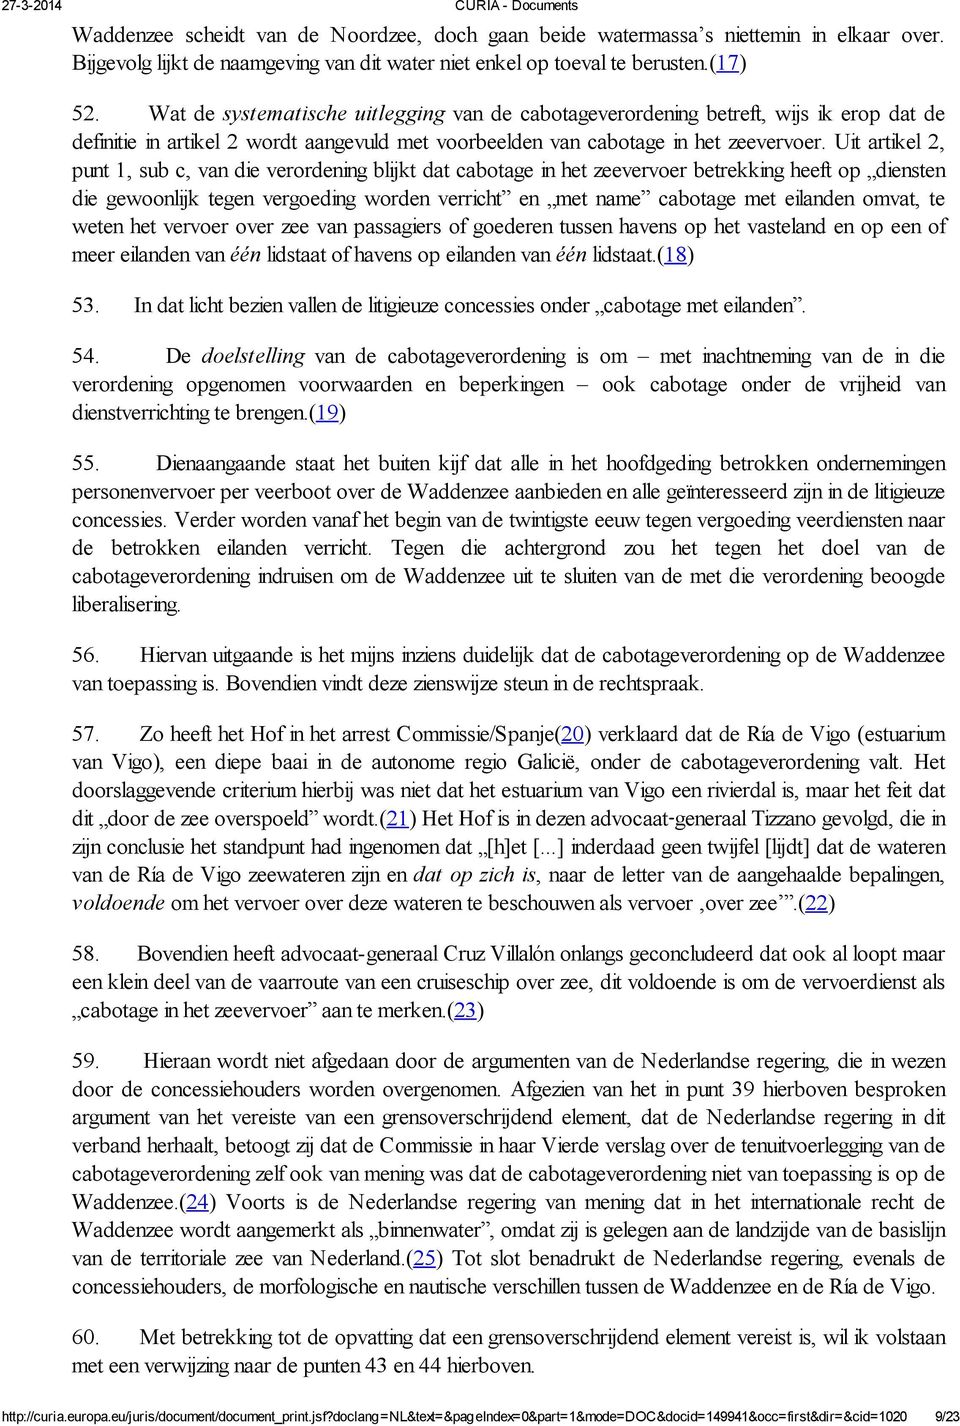 Uit artikel 2, punt 1, sub c, van die verordening blijkt dat cabotage in het zeevervoer betrekking heeft op diensten die gewoonlijk tegen vergoeding worden verricht en met name cabotage met eilanden